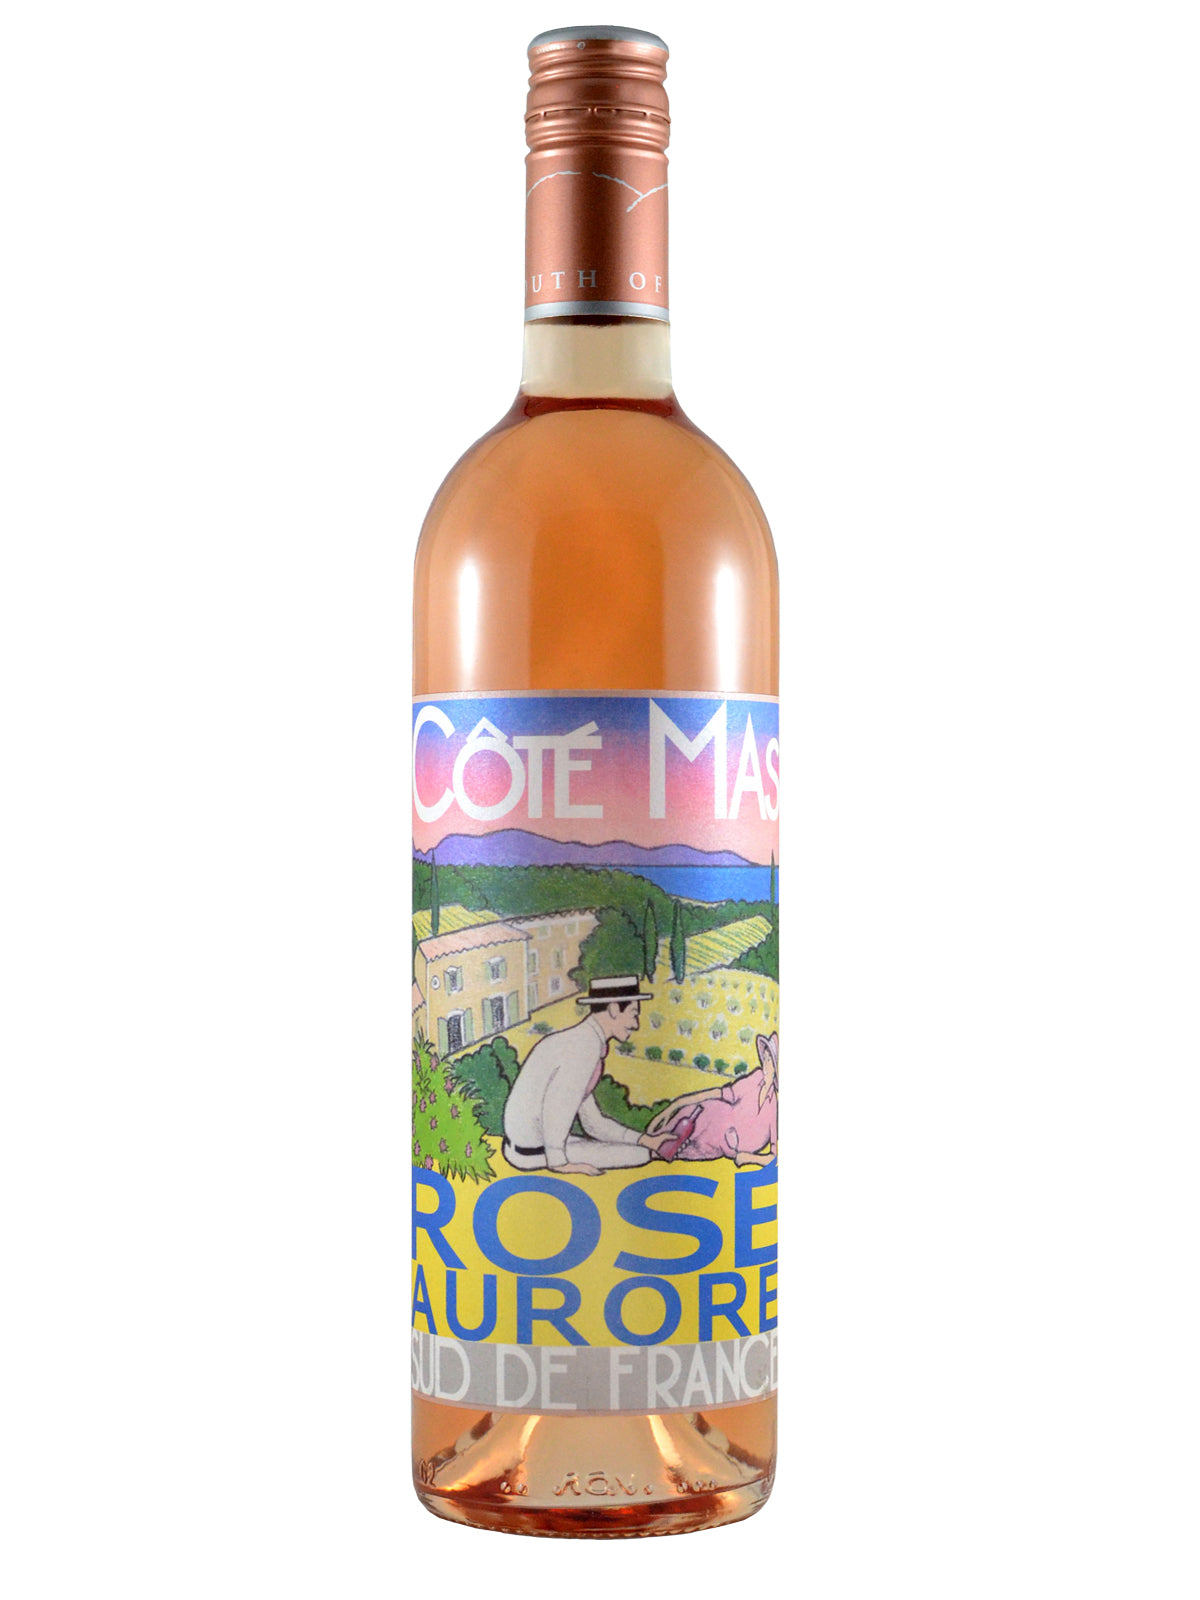 Côté Mas, Rosé Aurore